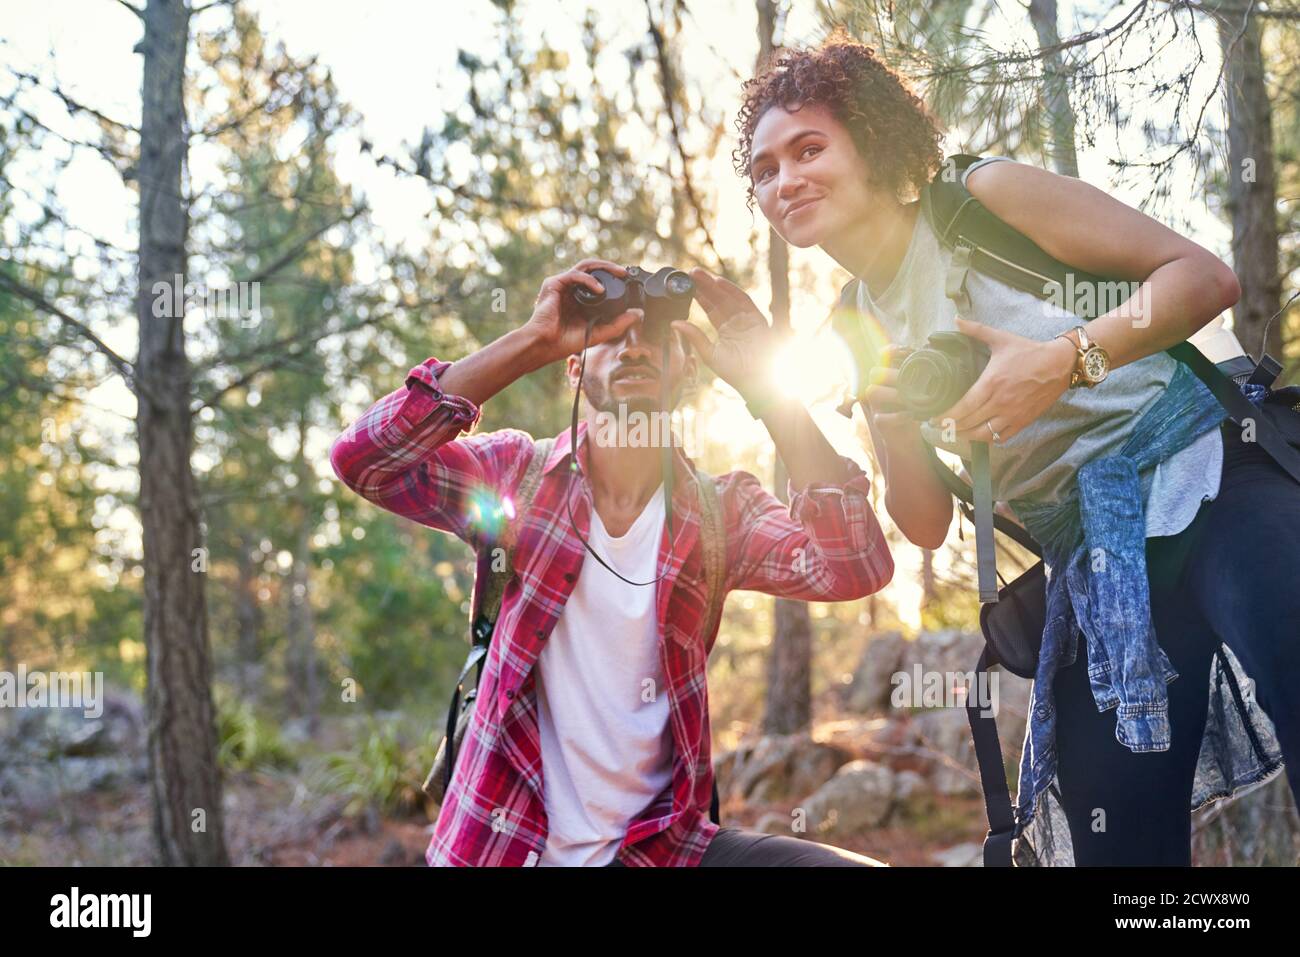 Curieux jeune couple de randonneurs utilisant des jumelles et un appareil photo dans le soleil bois Banque D'Images